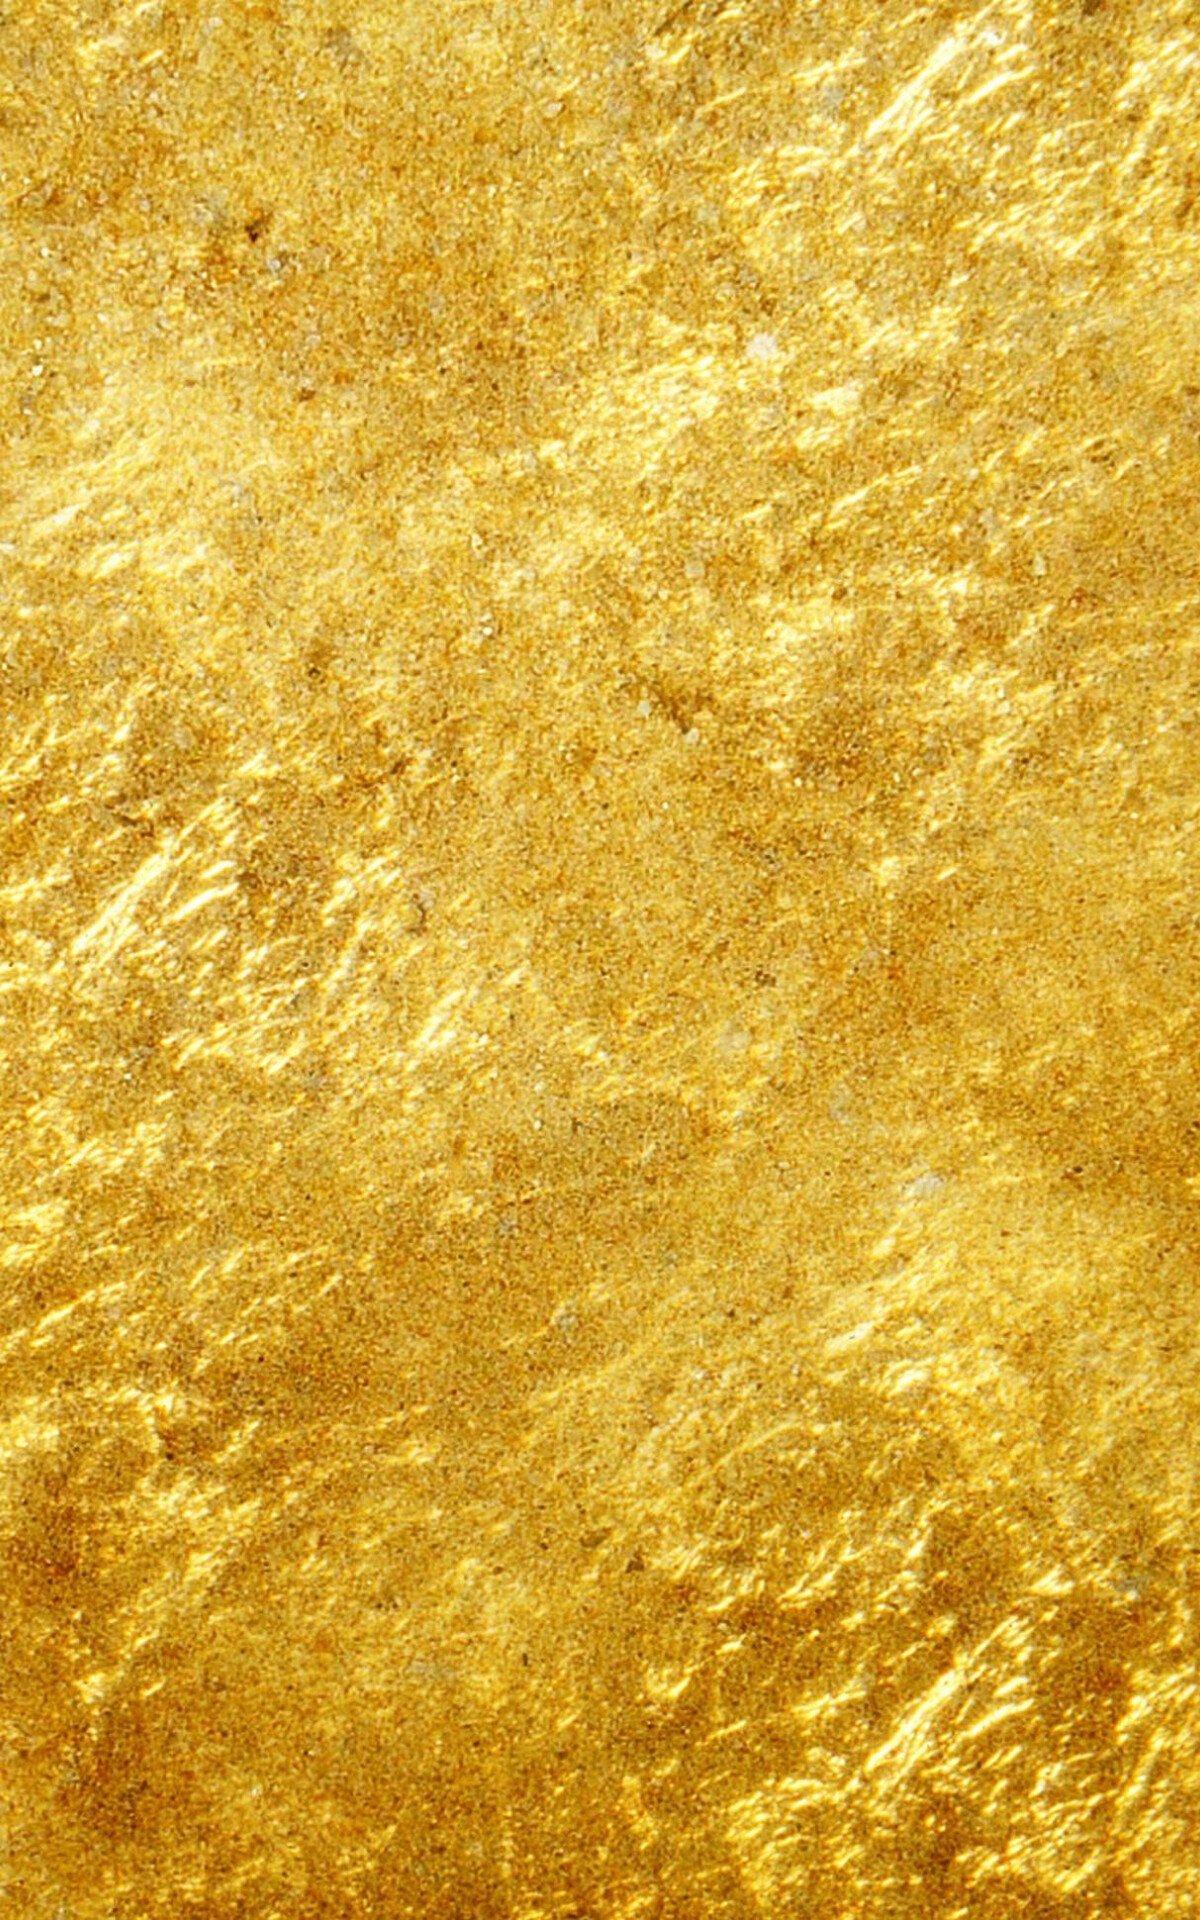 Gold Foil: A gilt surface, Mechanical type of a complex gilding process. 1200x1920 HD Wallpaper.